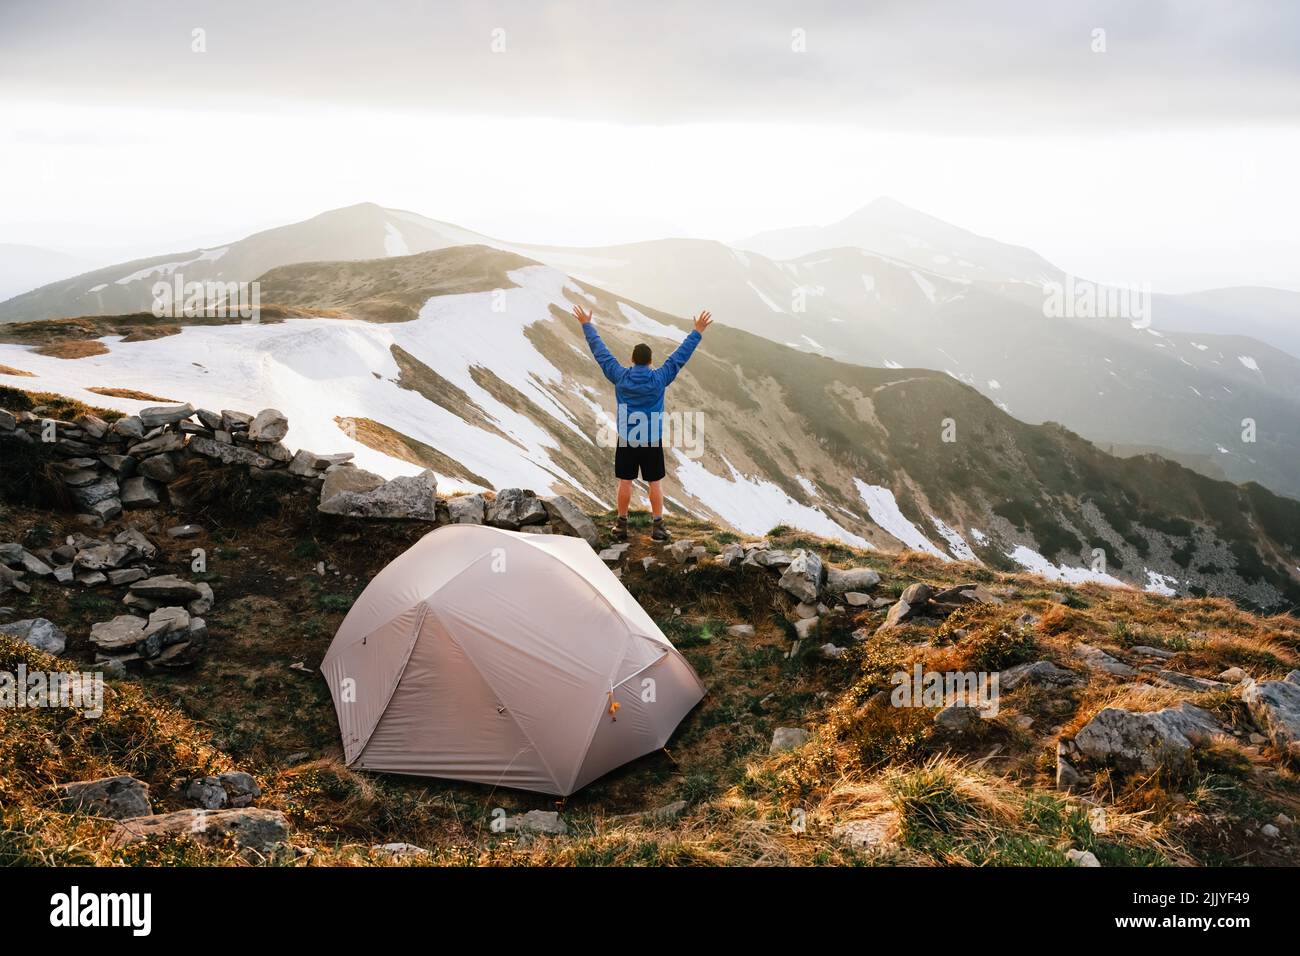 Tenda grigia e turista con mano sullo sfondo di un incredibile paesaggio di montagna. Un'incredibile altopiano serale. Concetto di turismo Foto Stock